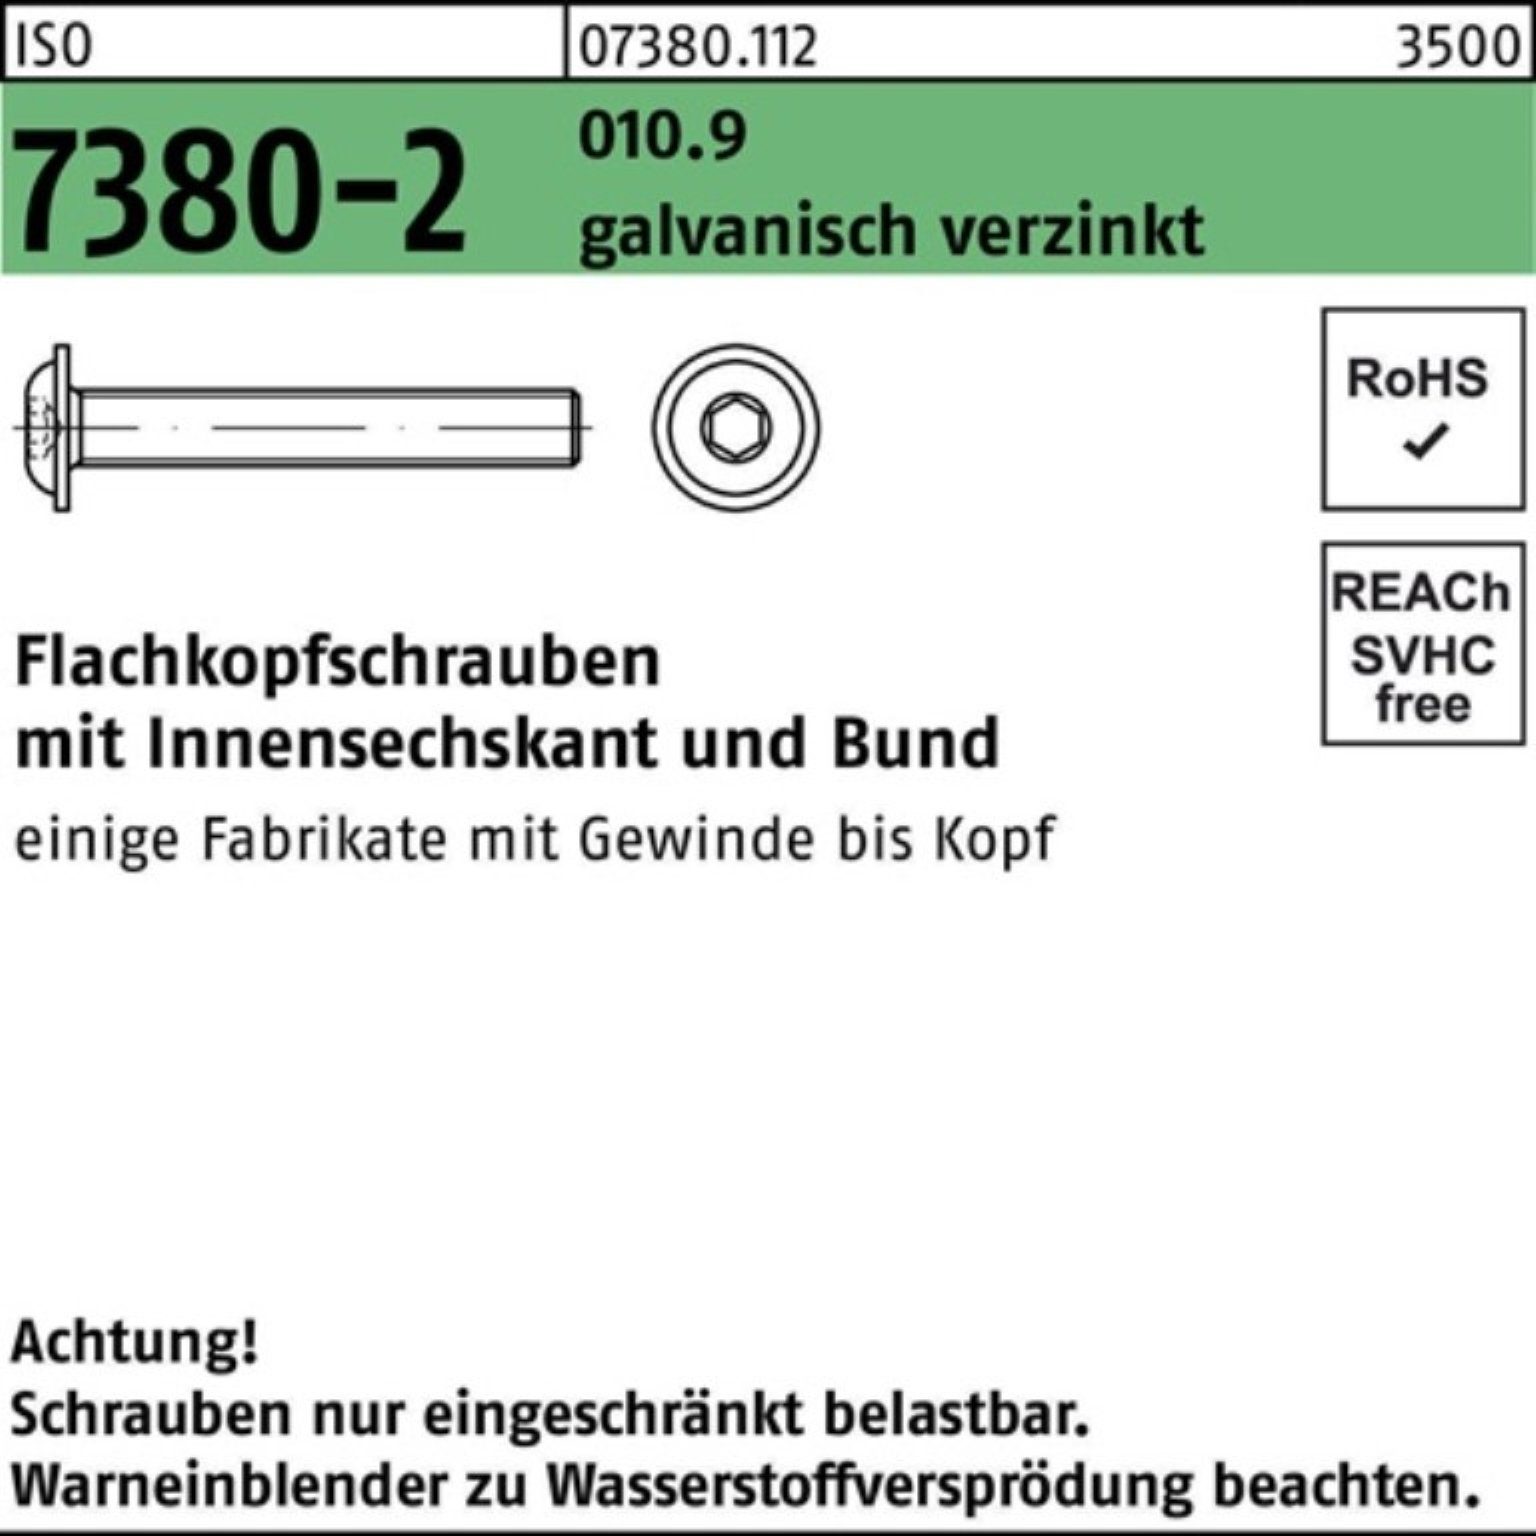 Reyher Schraube 100er Pack 7380-2 Flachkopfschraube ISO ga M12x60 Bund/Innen-6kt 010.9